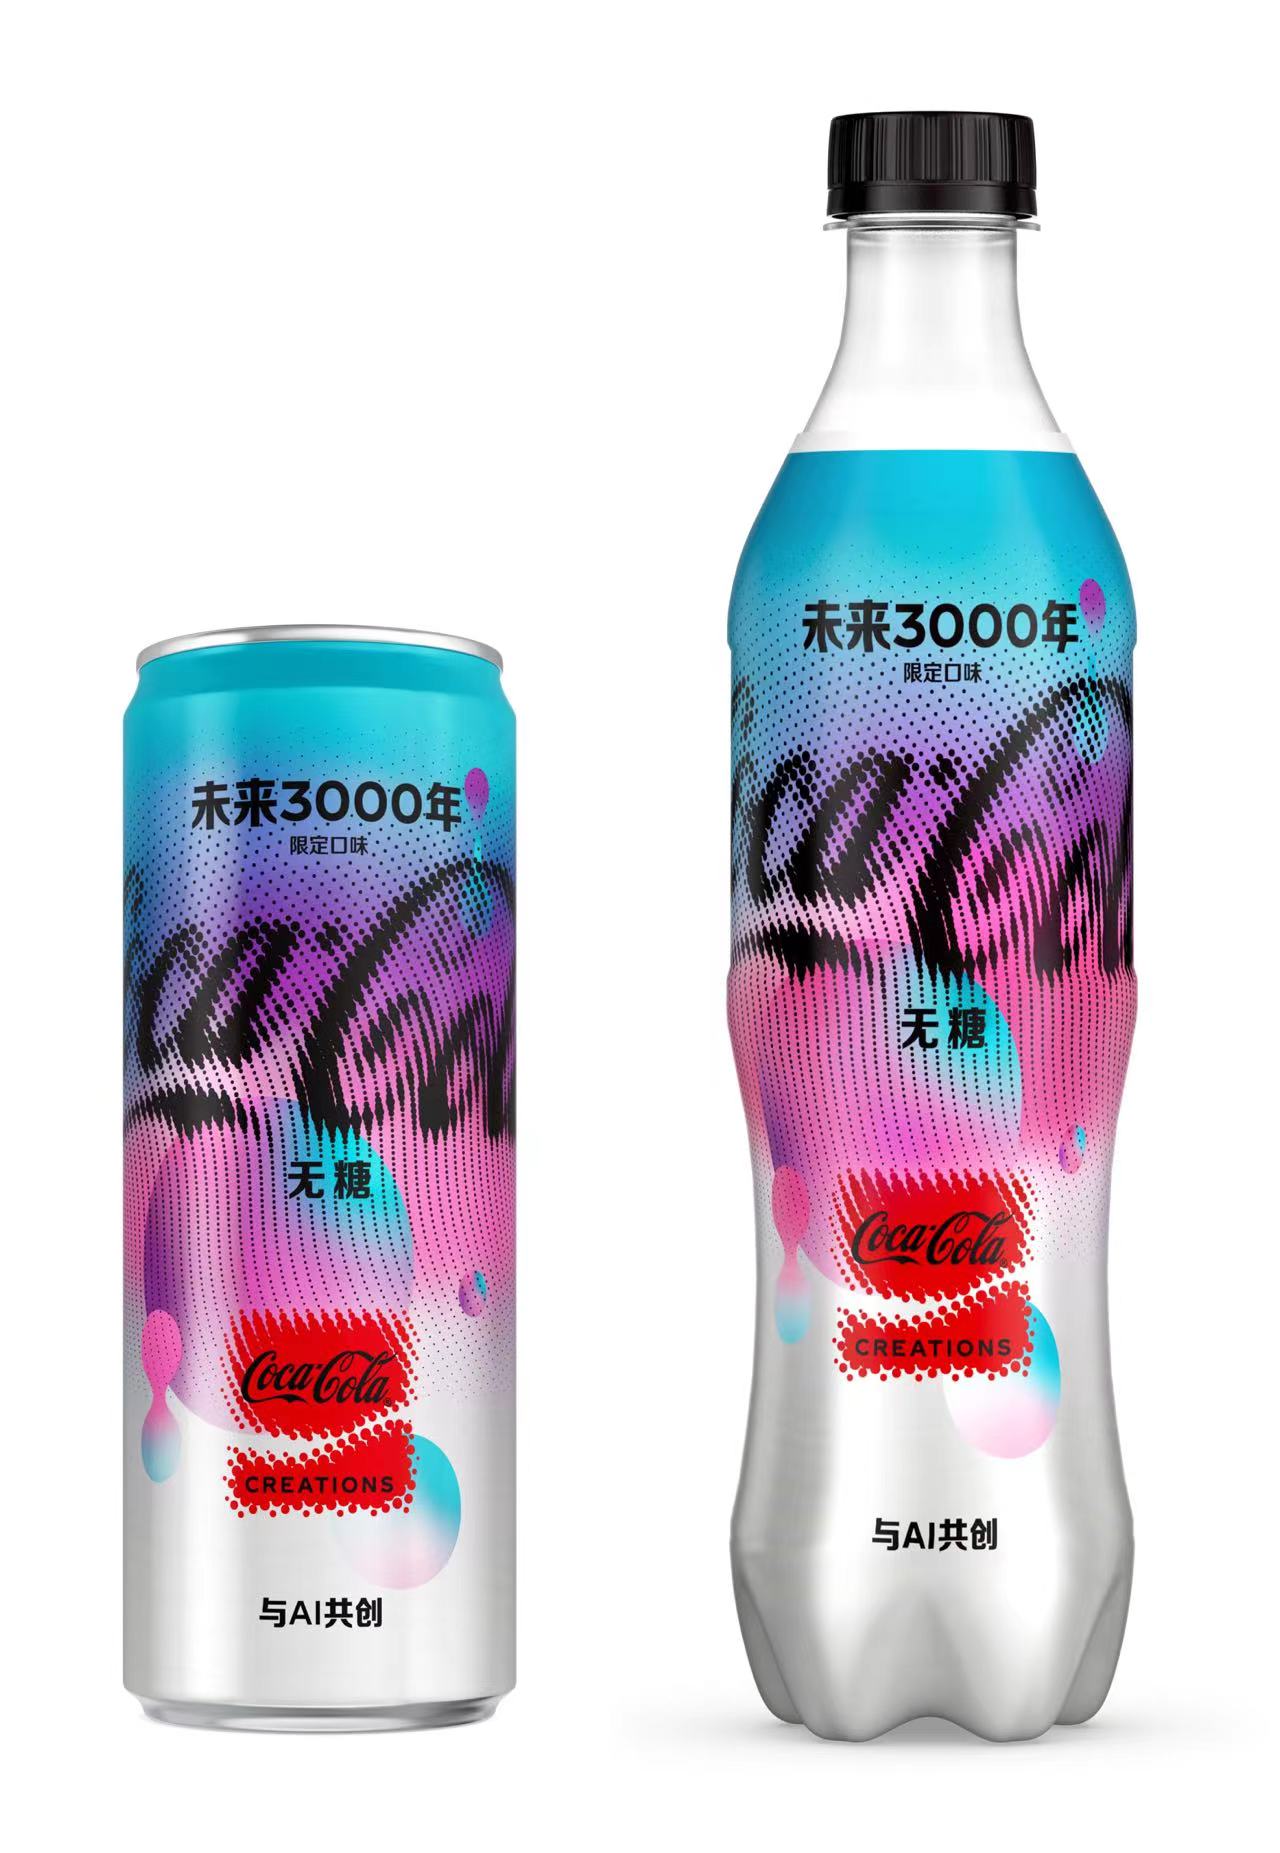 【可口可乐】“未来3000年”将推出摩登罐和PET塑料瓶包装两种规格